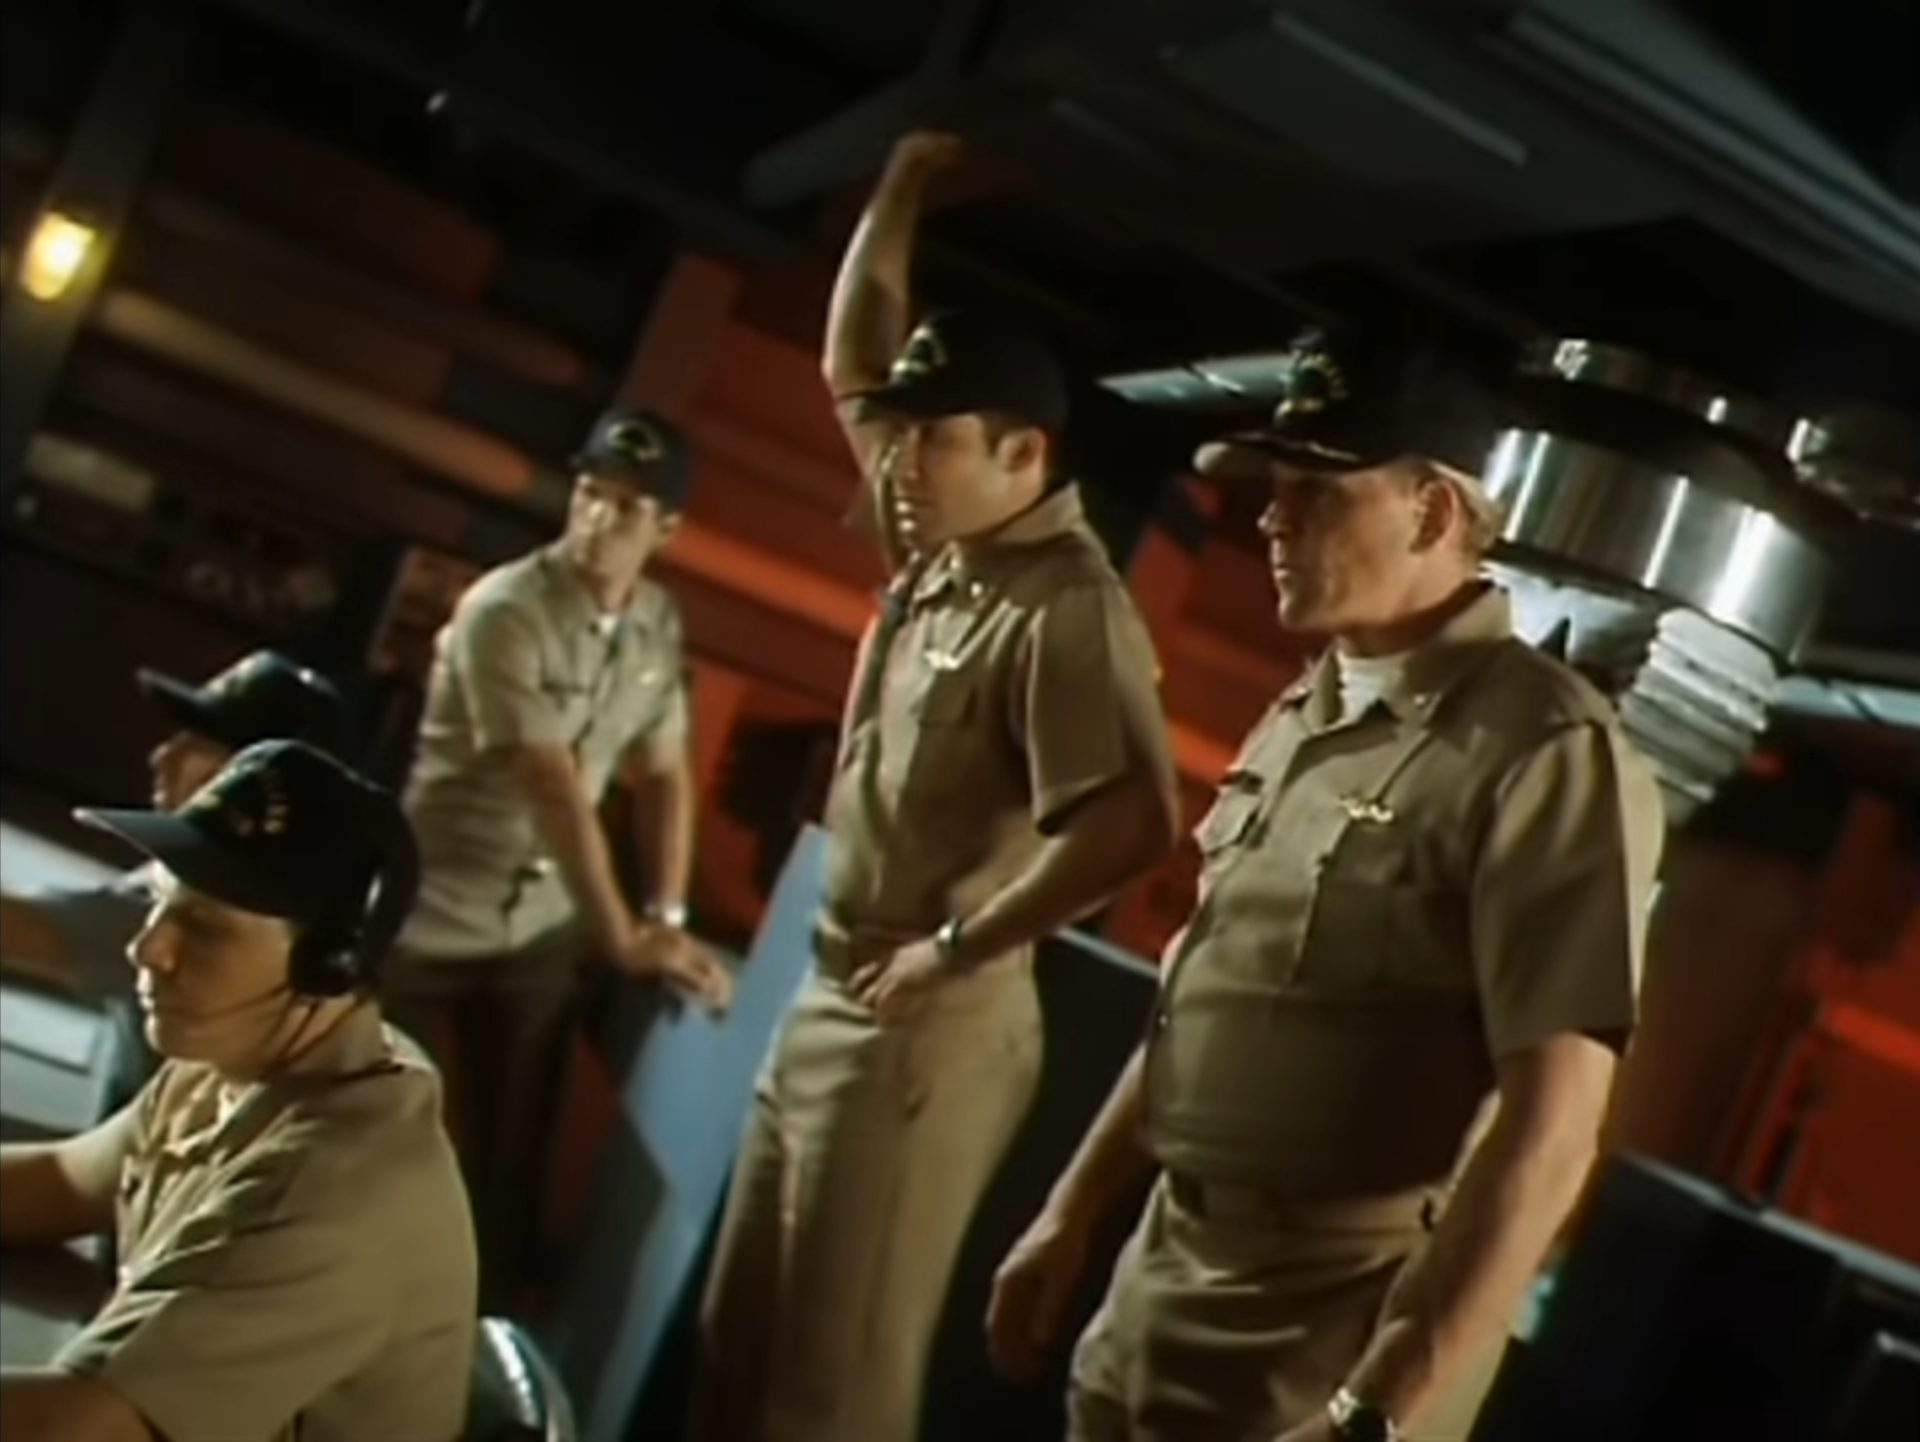 Gary Busey als US-Navy-U-Boot-Kommandant in der Kommandozentrale im Beisein einiger Crewmitglieder in kritischer Atmosphäre; das Boot befindet sich in Schräglage.